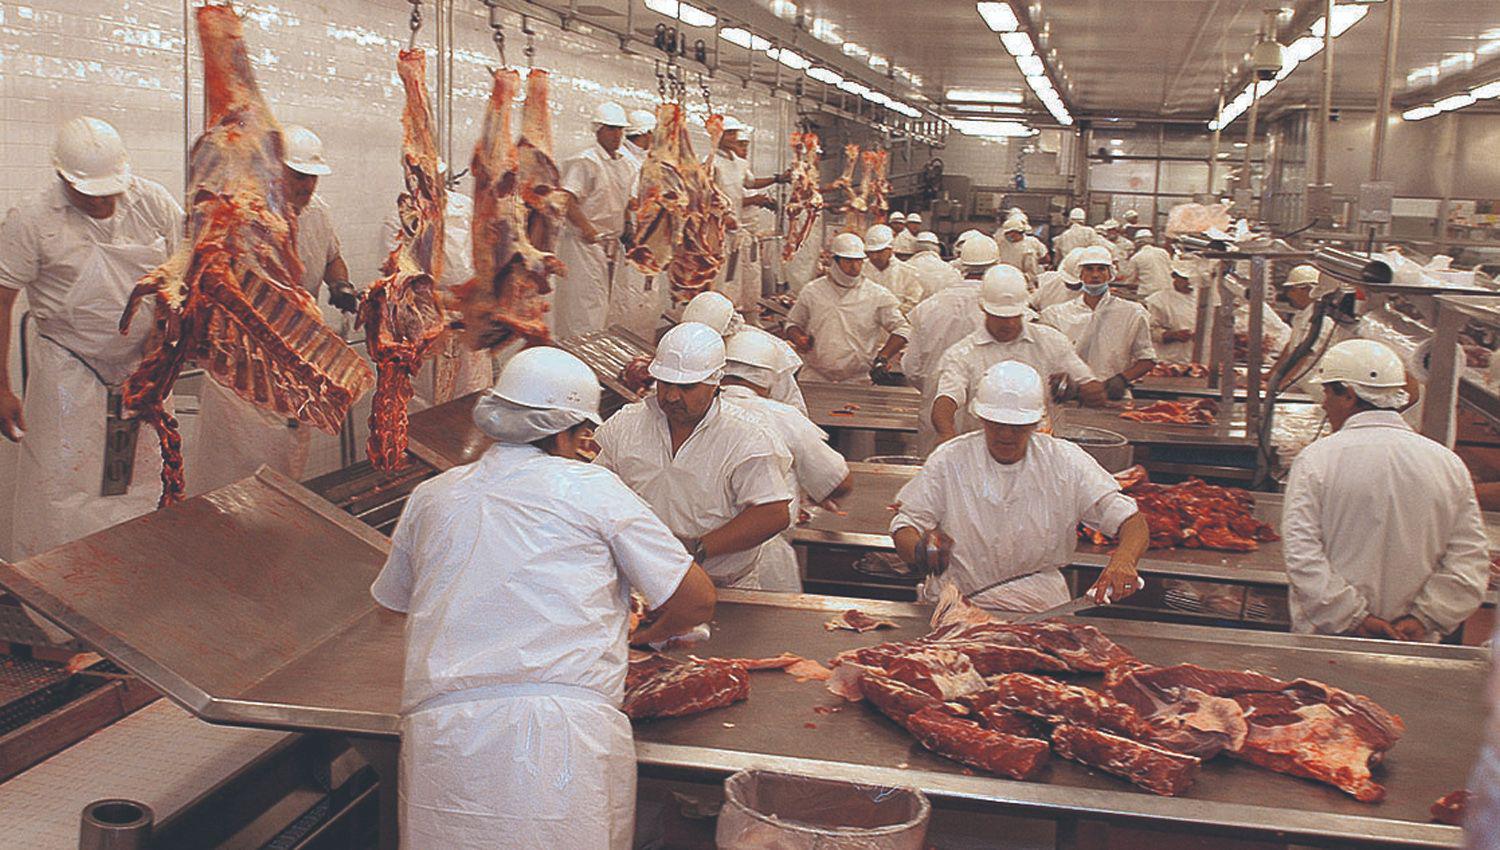 Los frigoriacuteficos deberaacuten informar el precio de la carne vacuna  y derivados para evitar aumentos injustificados